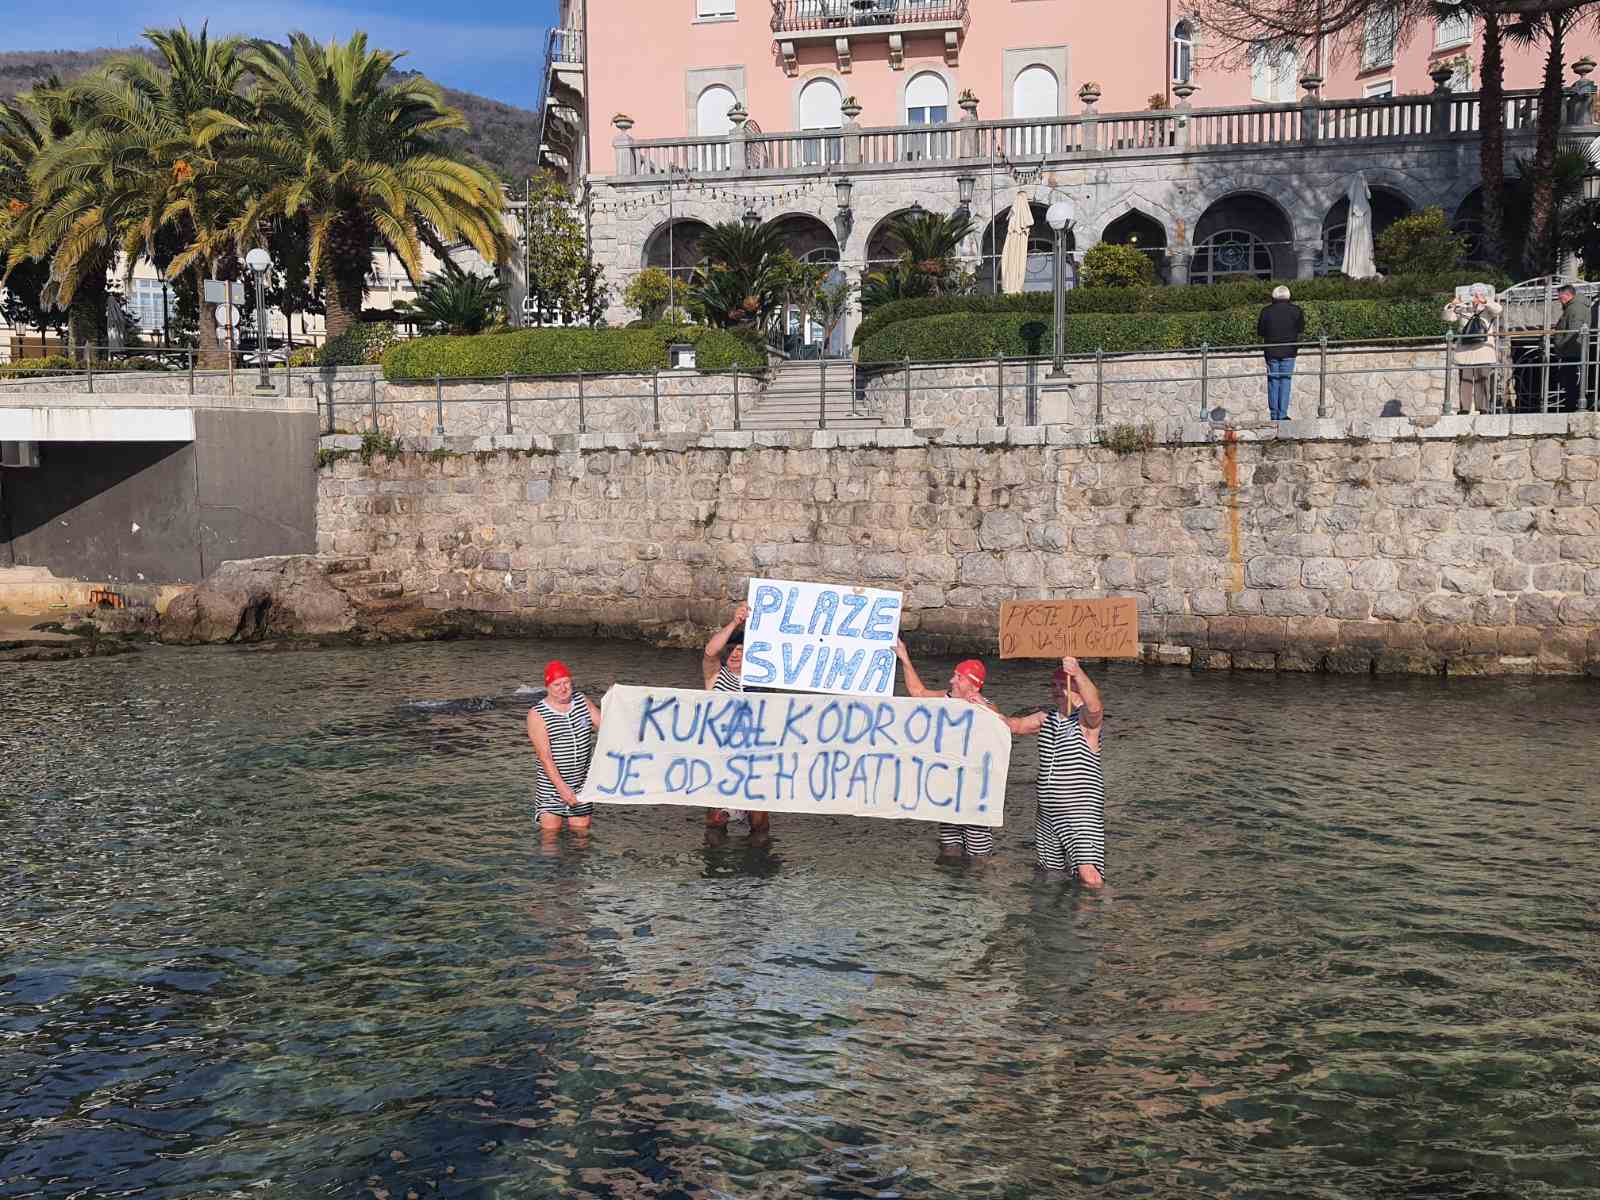 Plaže svima: U Opatiji održan prosvjed protiv ograničenog pristupa plažama